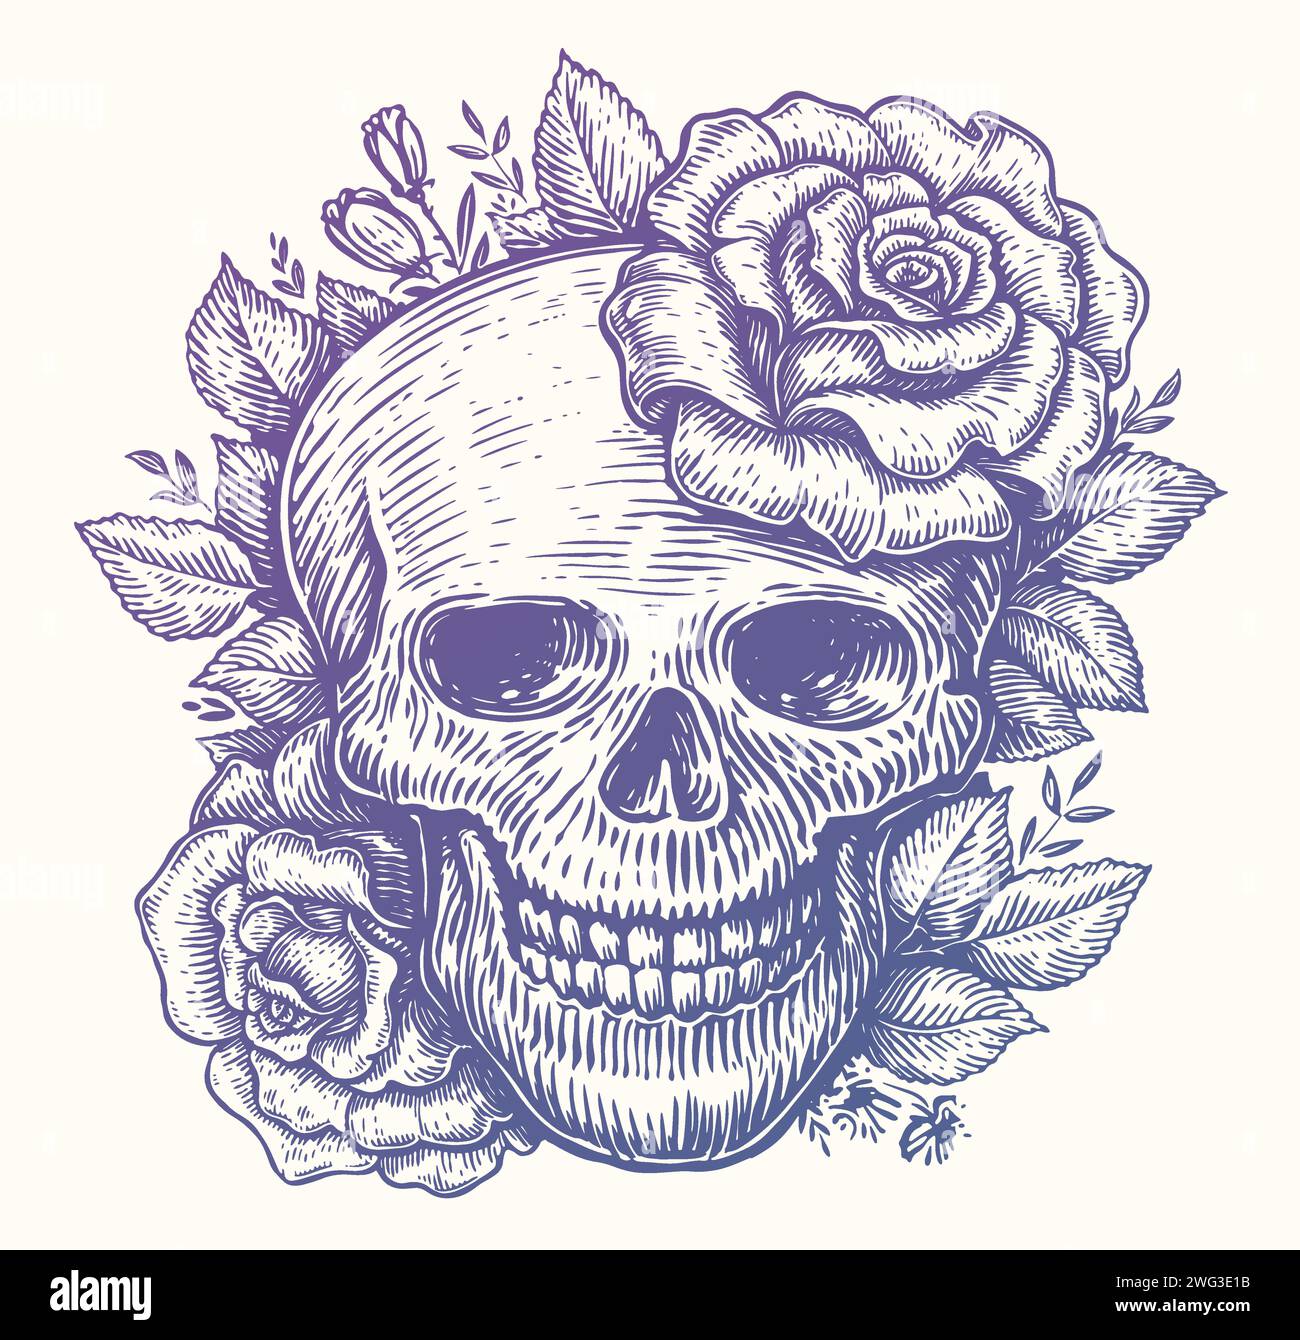 Crâne humain en fleurs avec des feuilles dans le style de gravure vintage. Roses et tête squelette. Illustration vectorielle d'esquisse Illustration de Vecteur